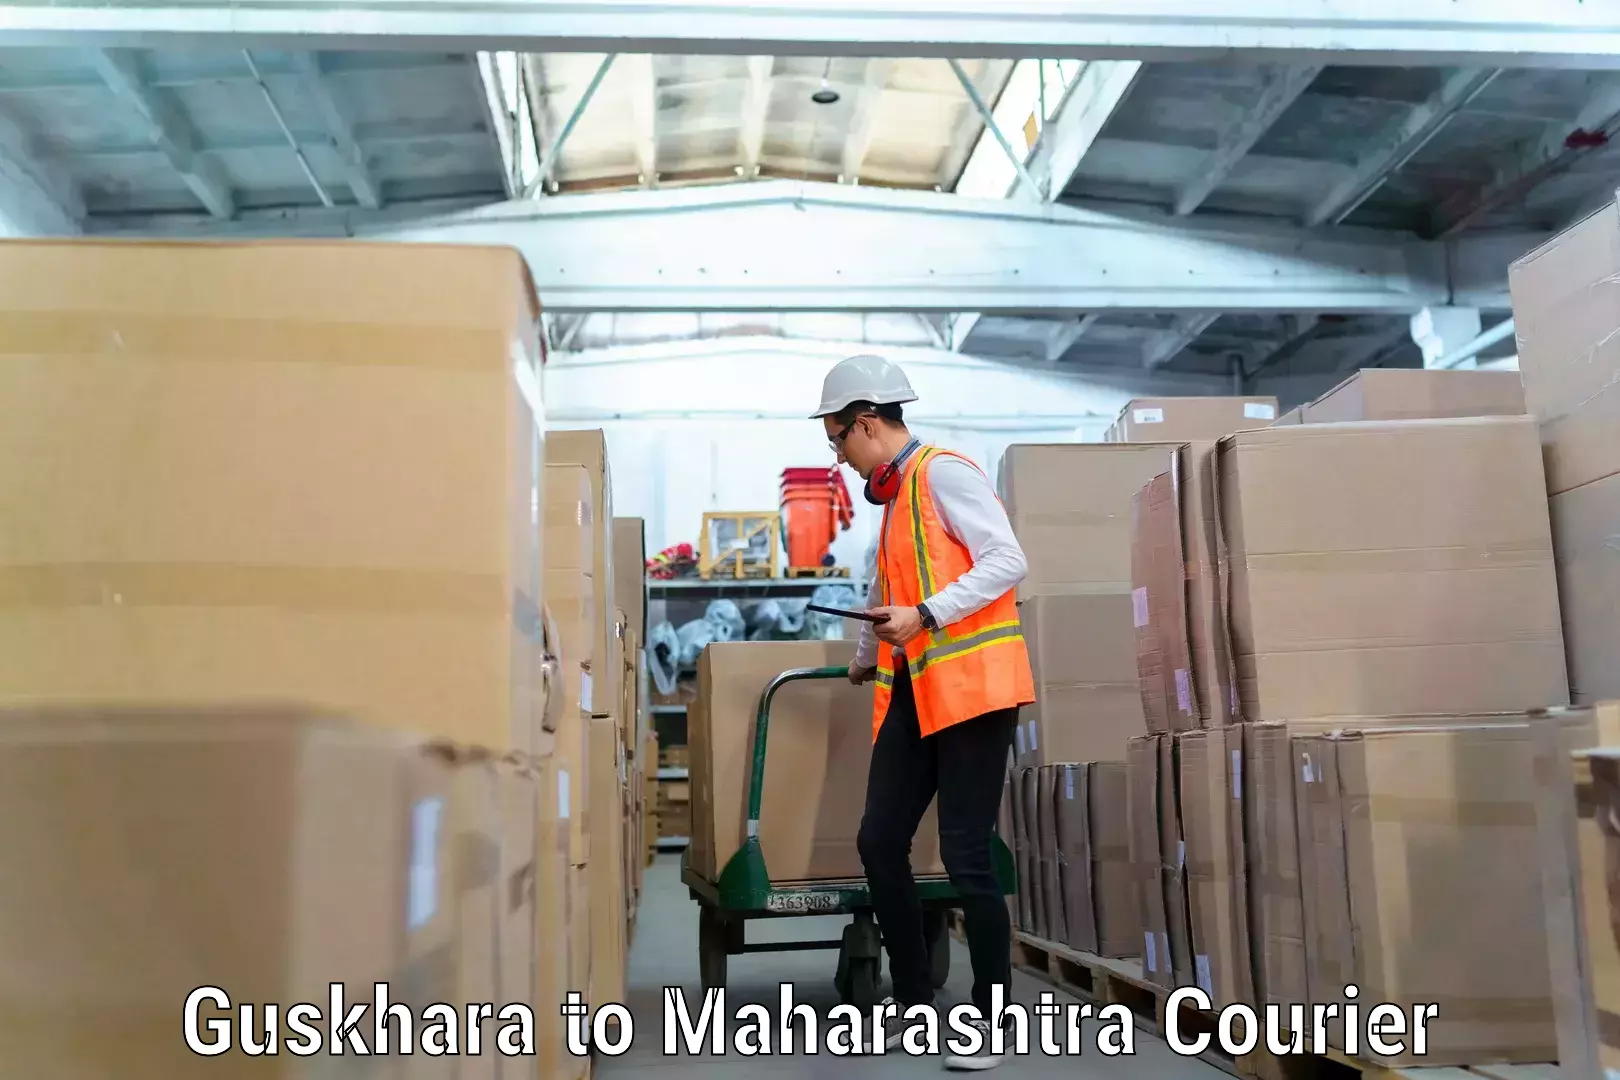 Moving and handling services in Guskhara to Maharashtra